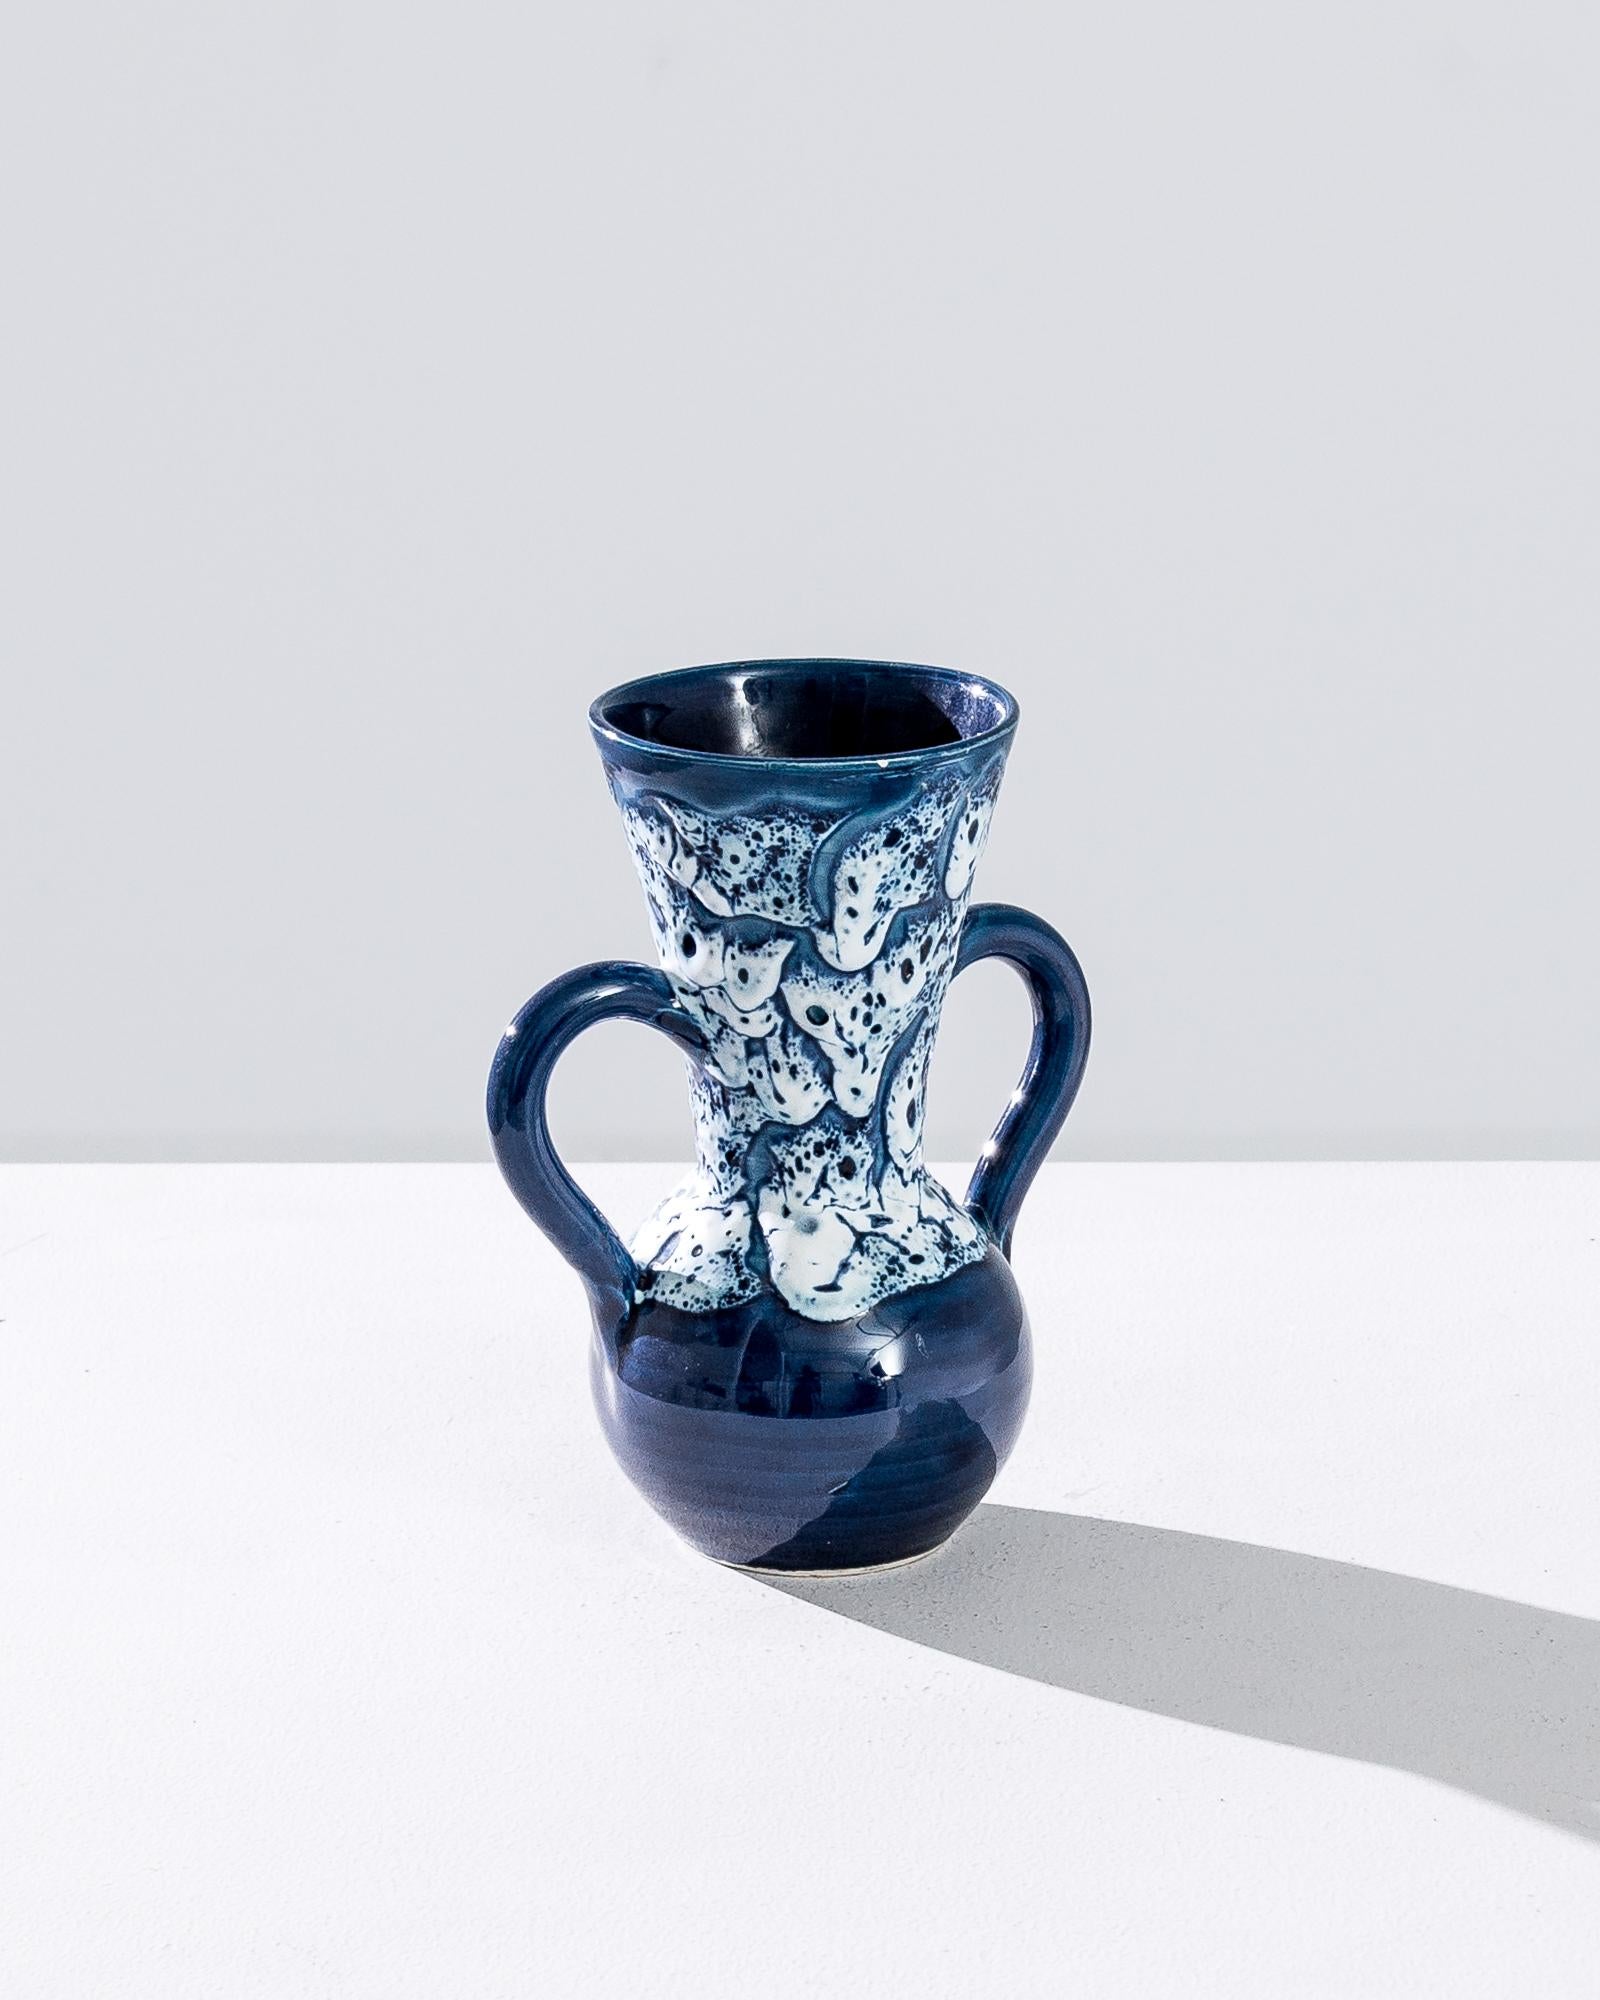 Belgian Vintage European Ceramic Vase with Two Loops Handles